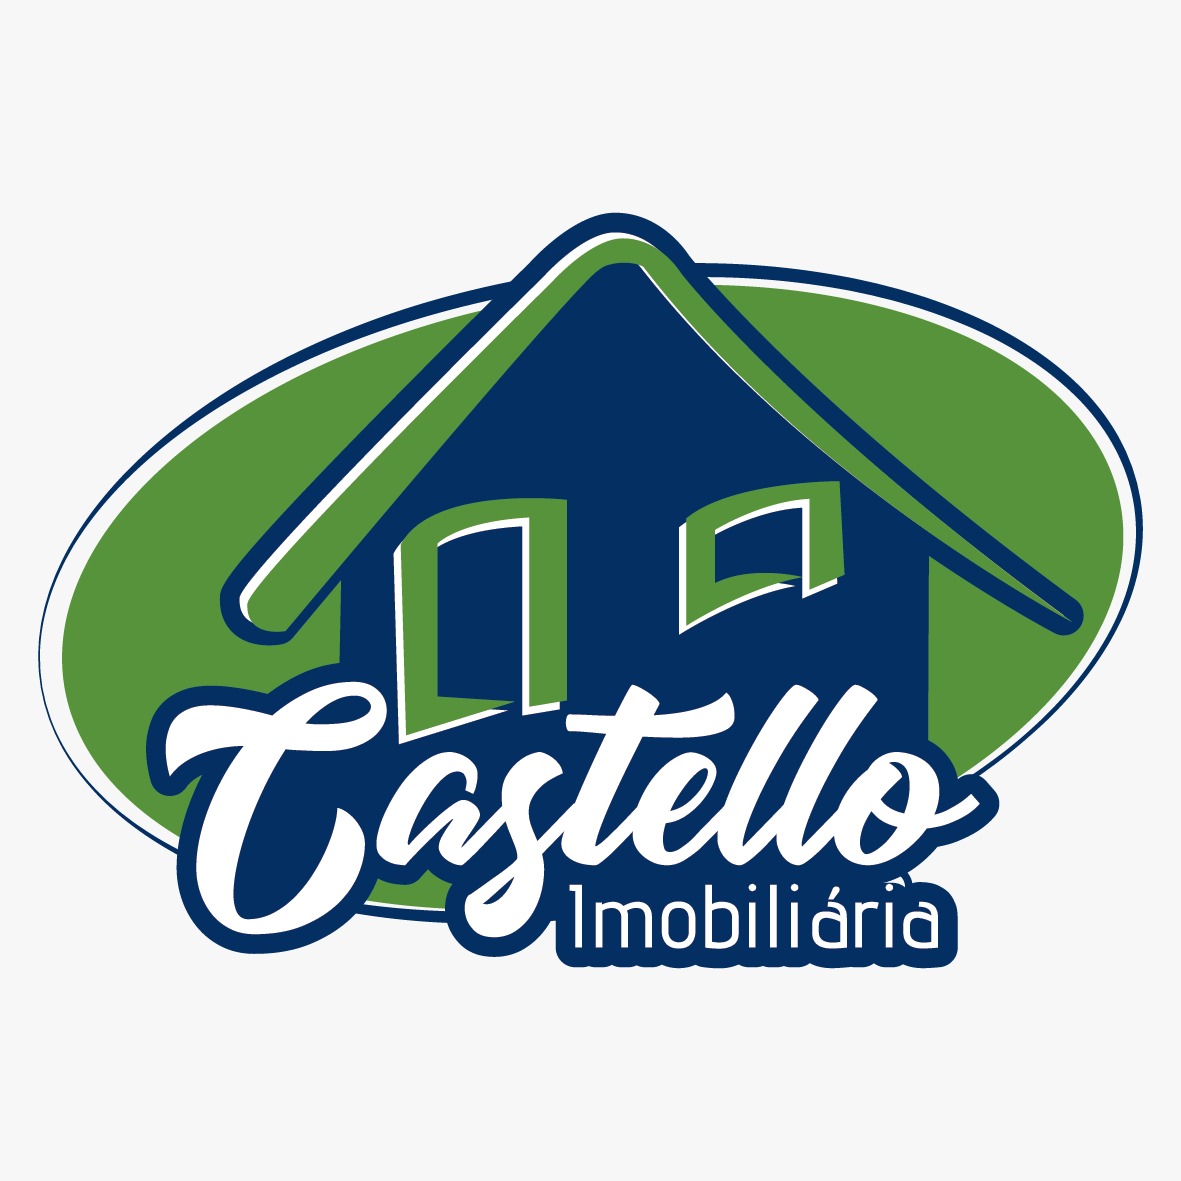 IMOBILIÁRIA CASTELLO